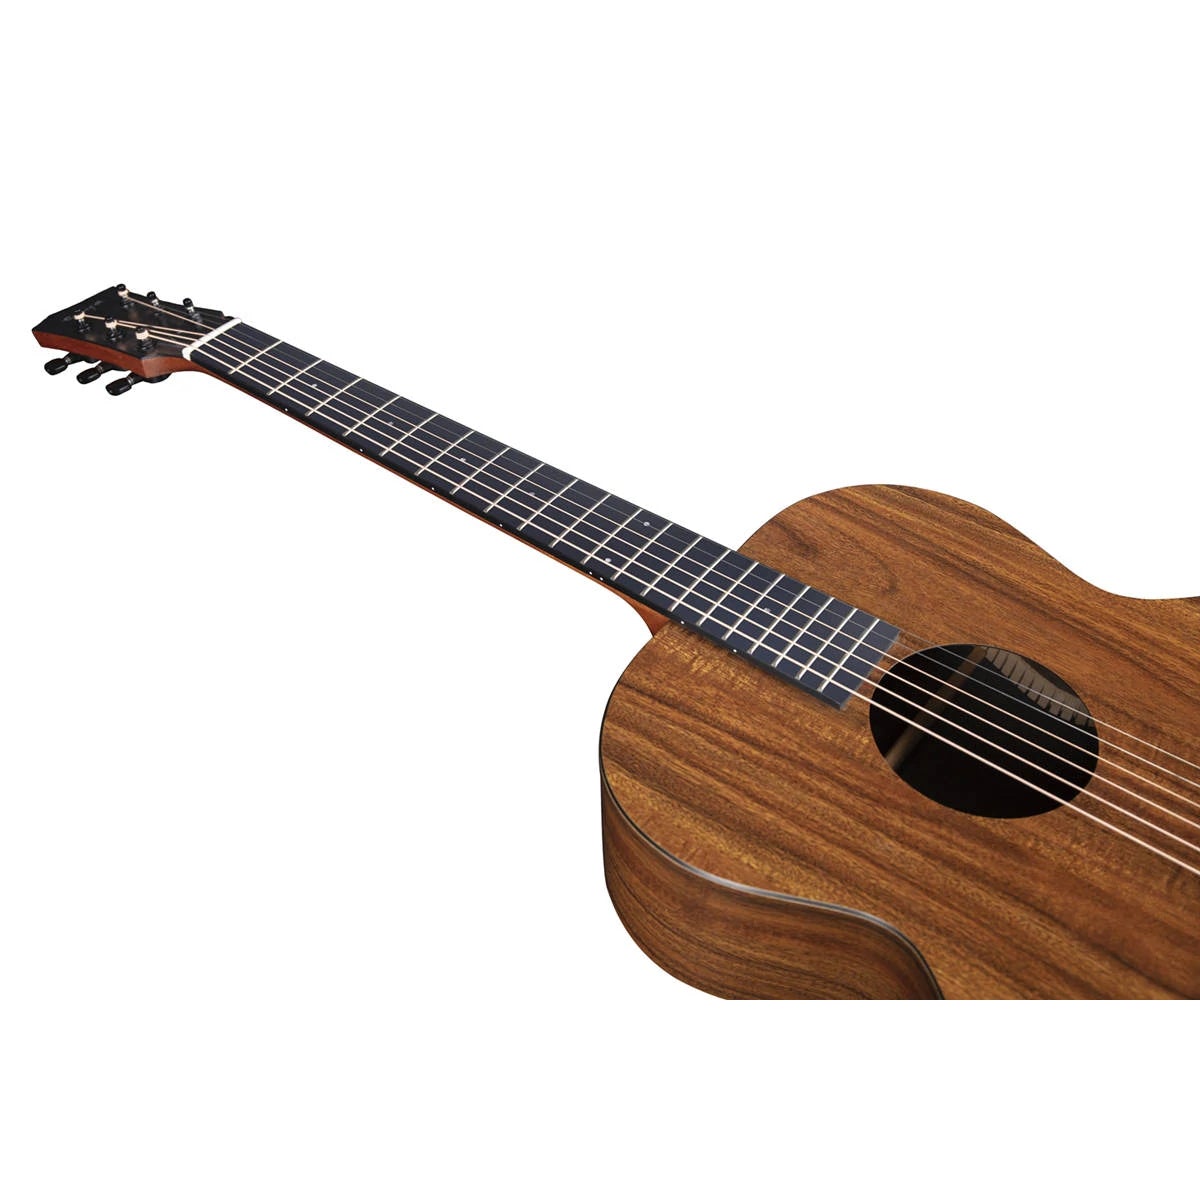 Đàn Guitar Acoustic Enya EA-X1